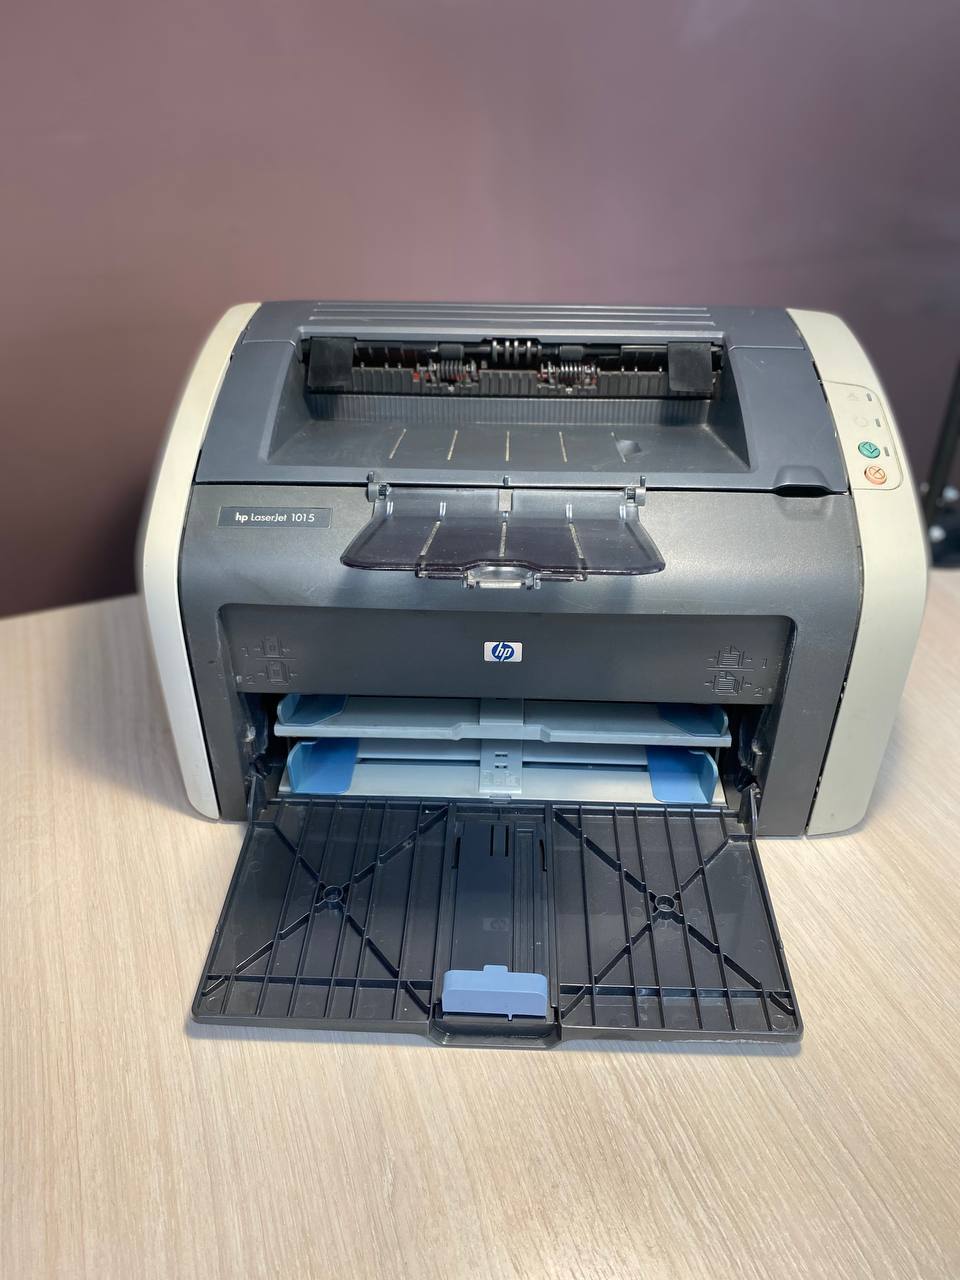 Купить принтер HP 1015 в Липецке